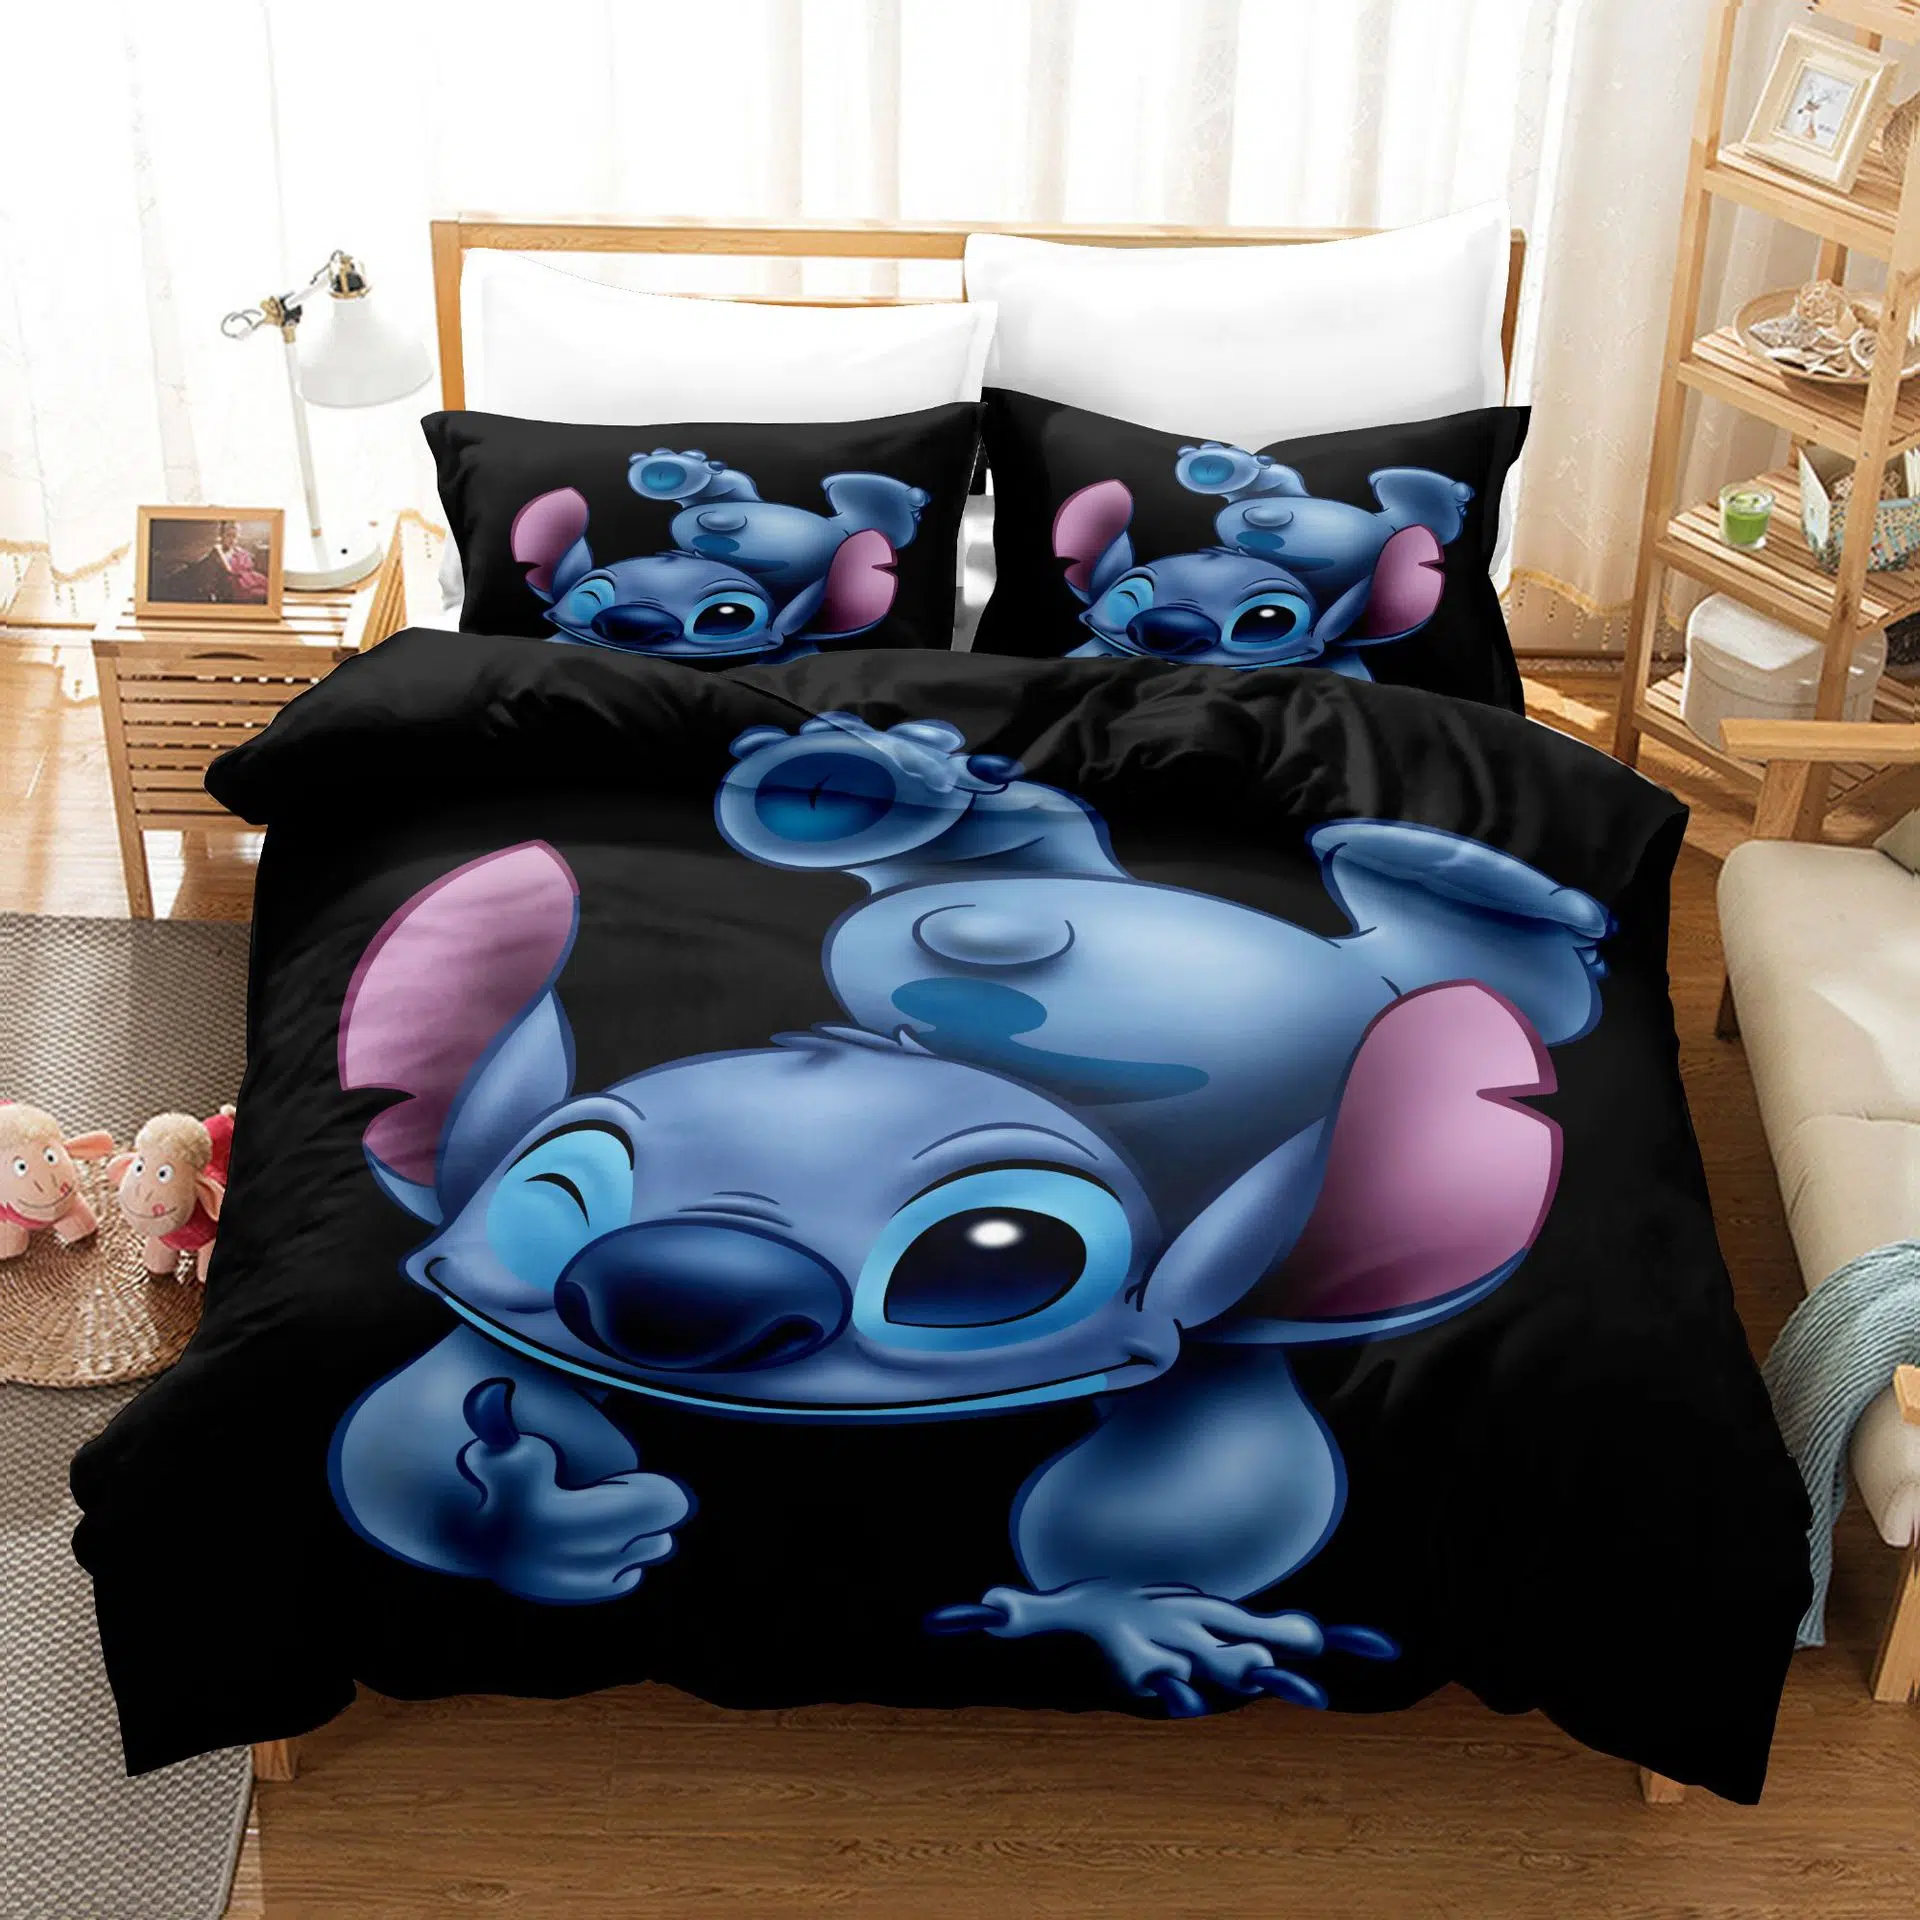 Ensemble-de-literie-Disney-Stitch-drap-taie-d-oreiller-couvre-lit-simple-ou-double-couverture-de (11)